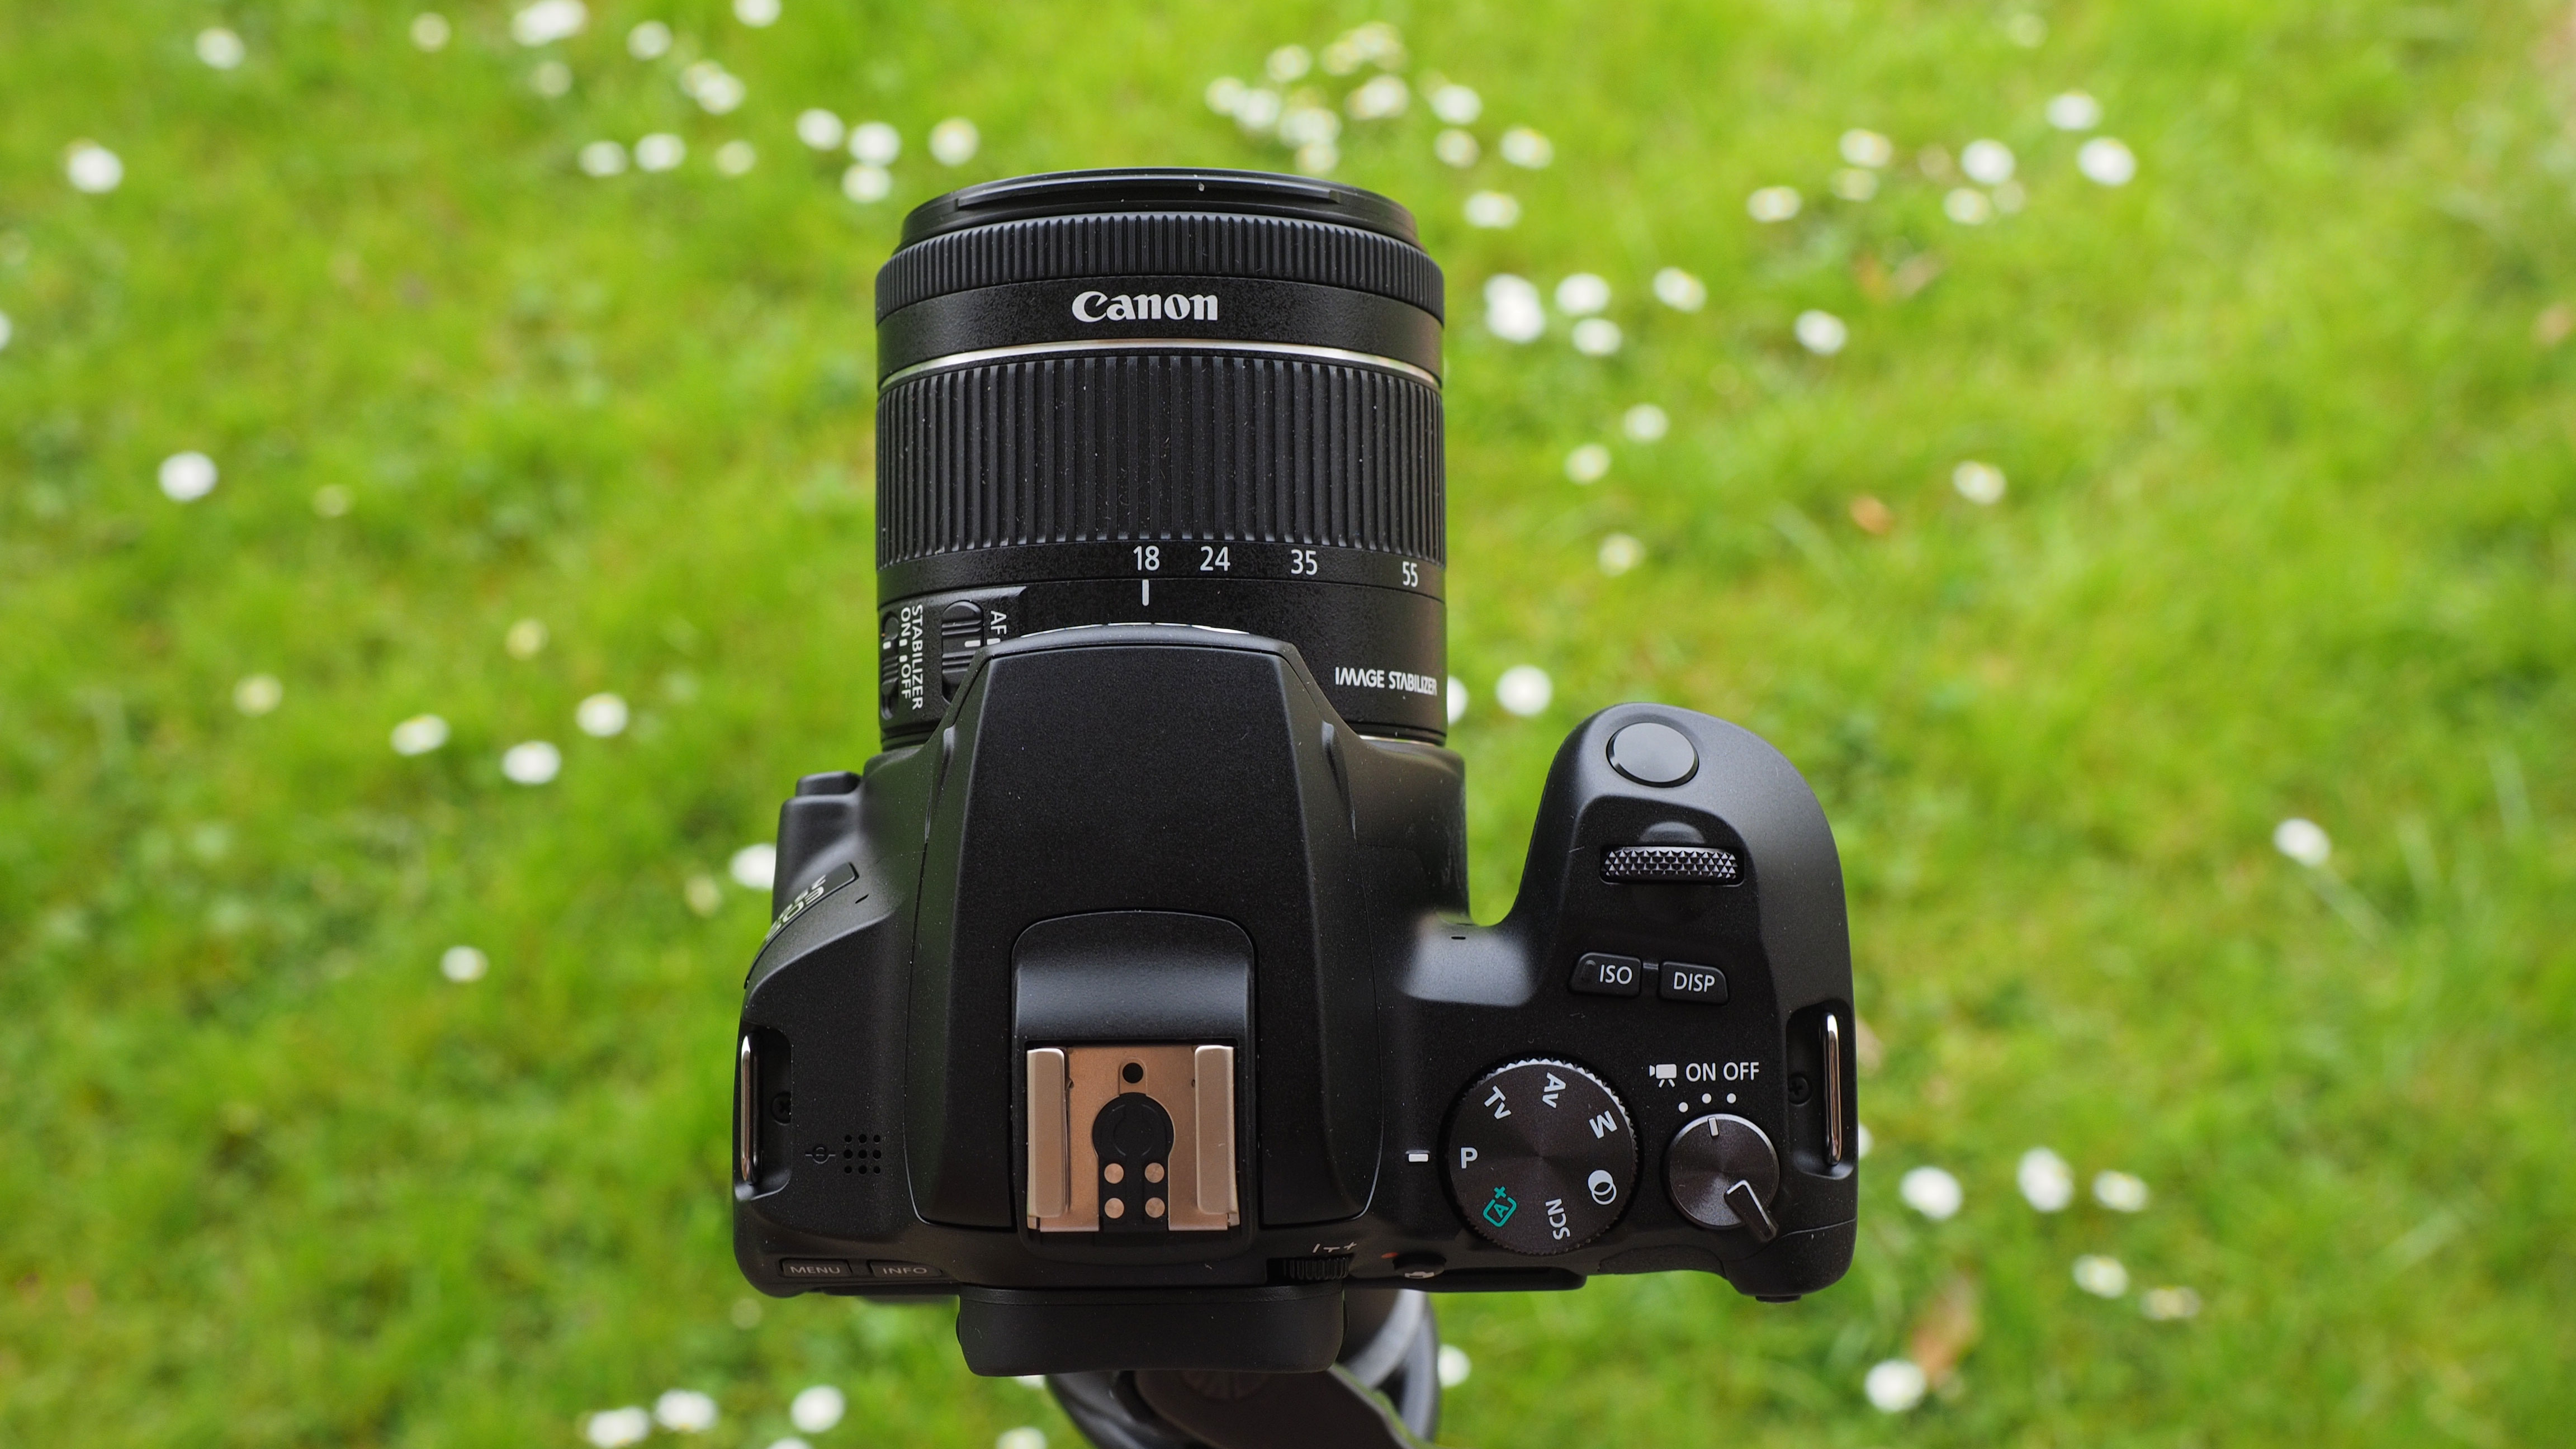 Best Canon camera: Canon EOS Rebel SL3 / EOS 250D